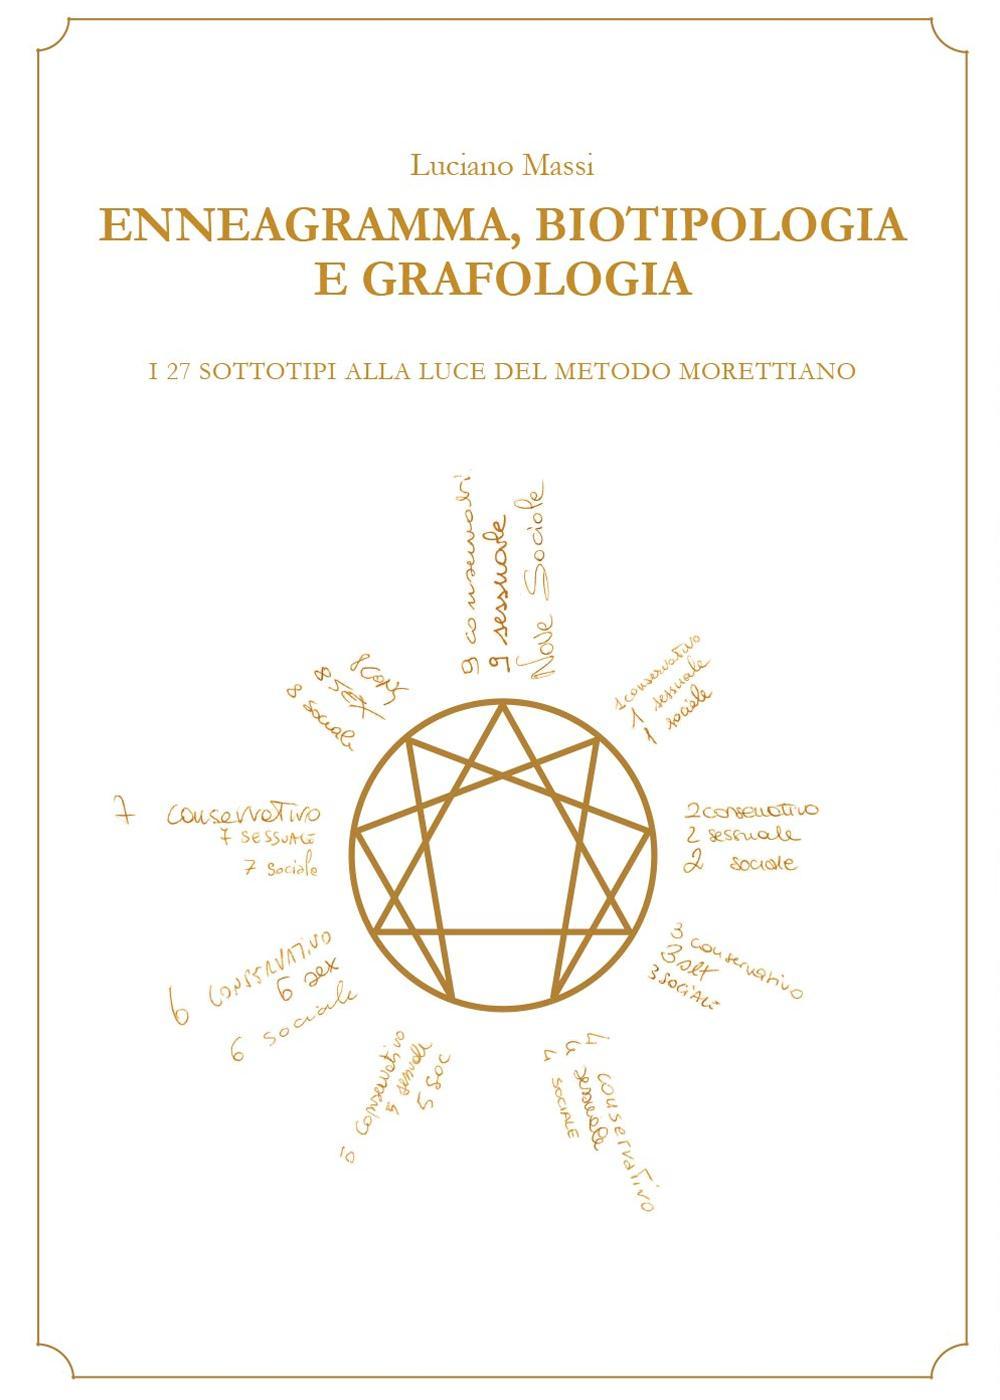 Kniha Enneagramma, biotipologia e grafologia Luciano Massi